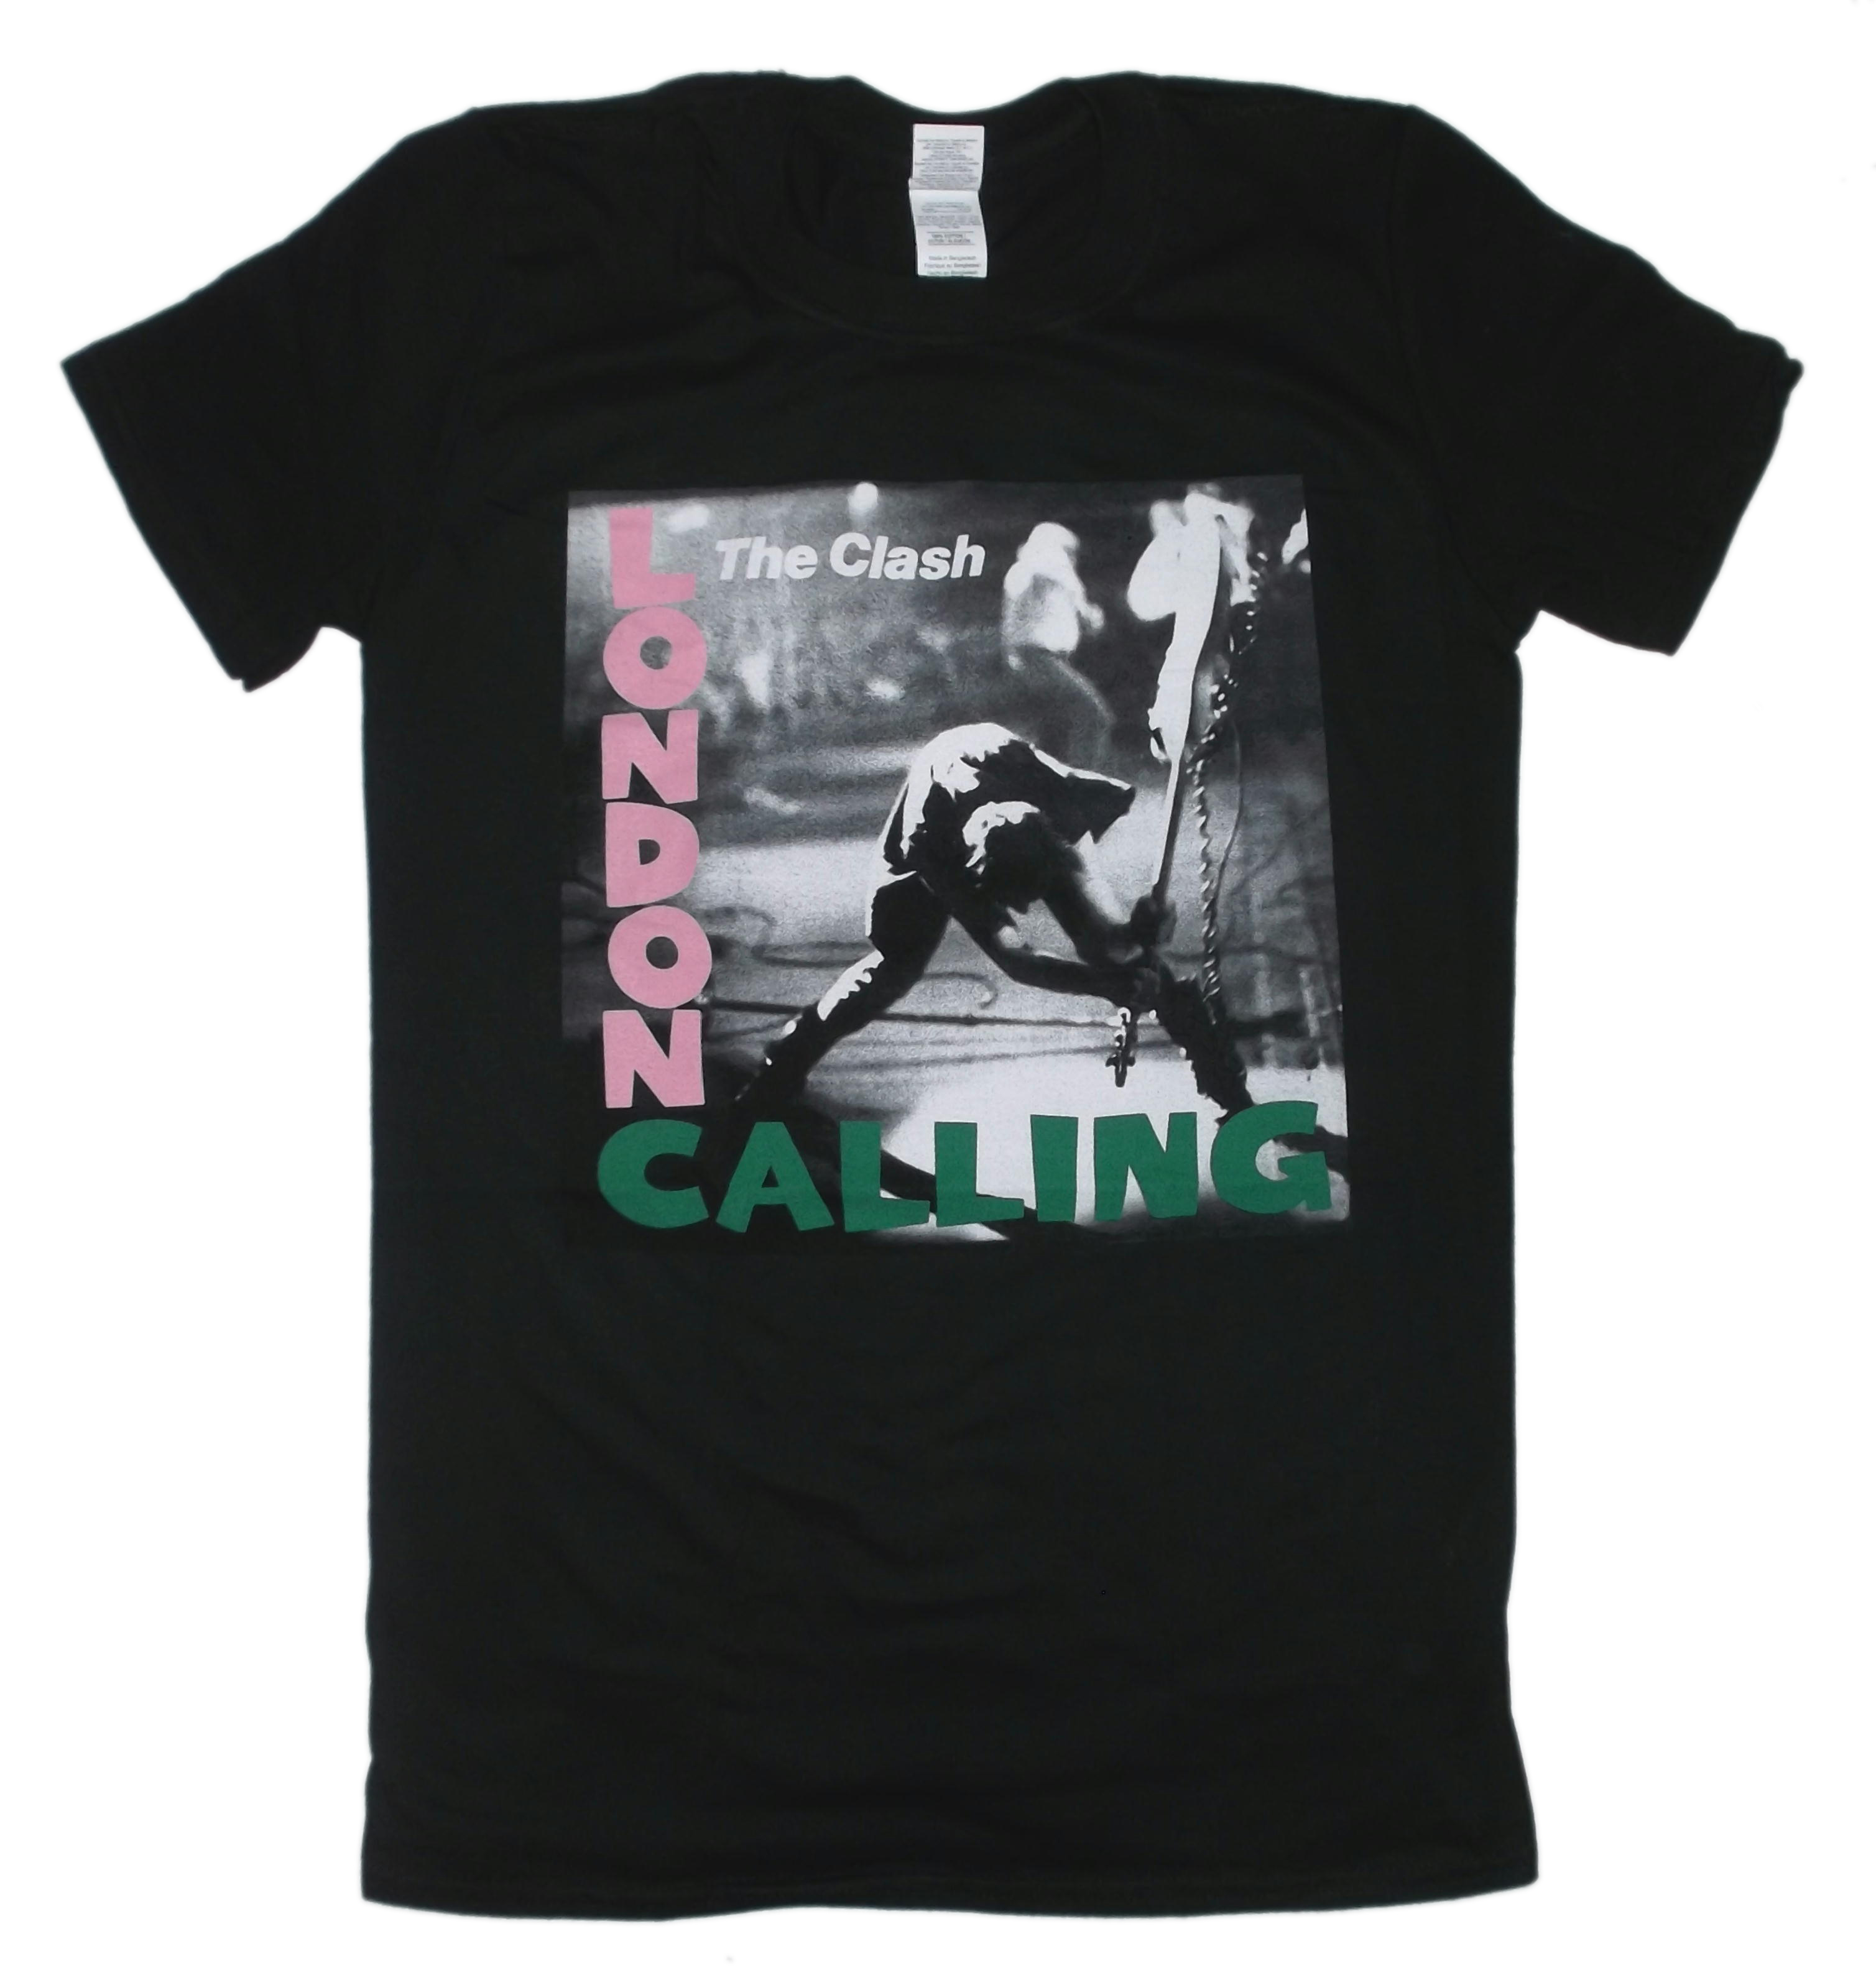 ザ・クラッシュ The Clash Tシャツ London Calling ロンドン・コーリング,パンク ロック バンドTシャツ 公式